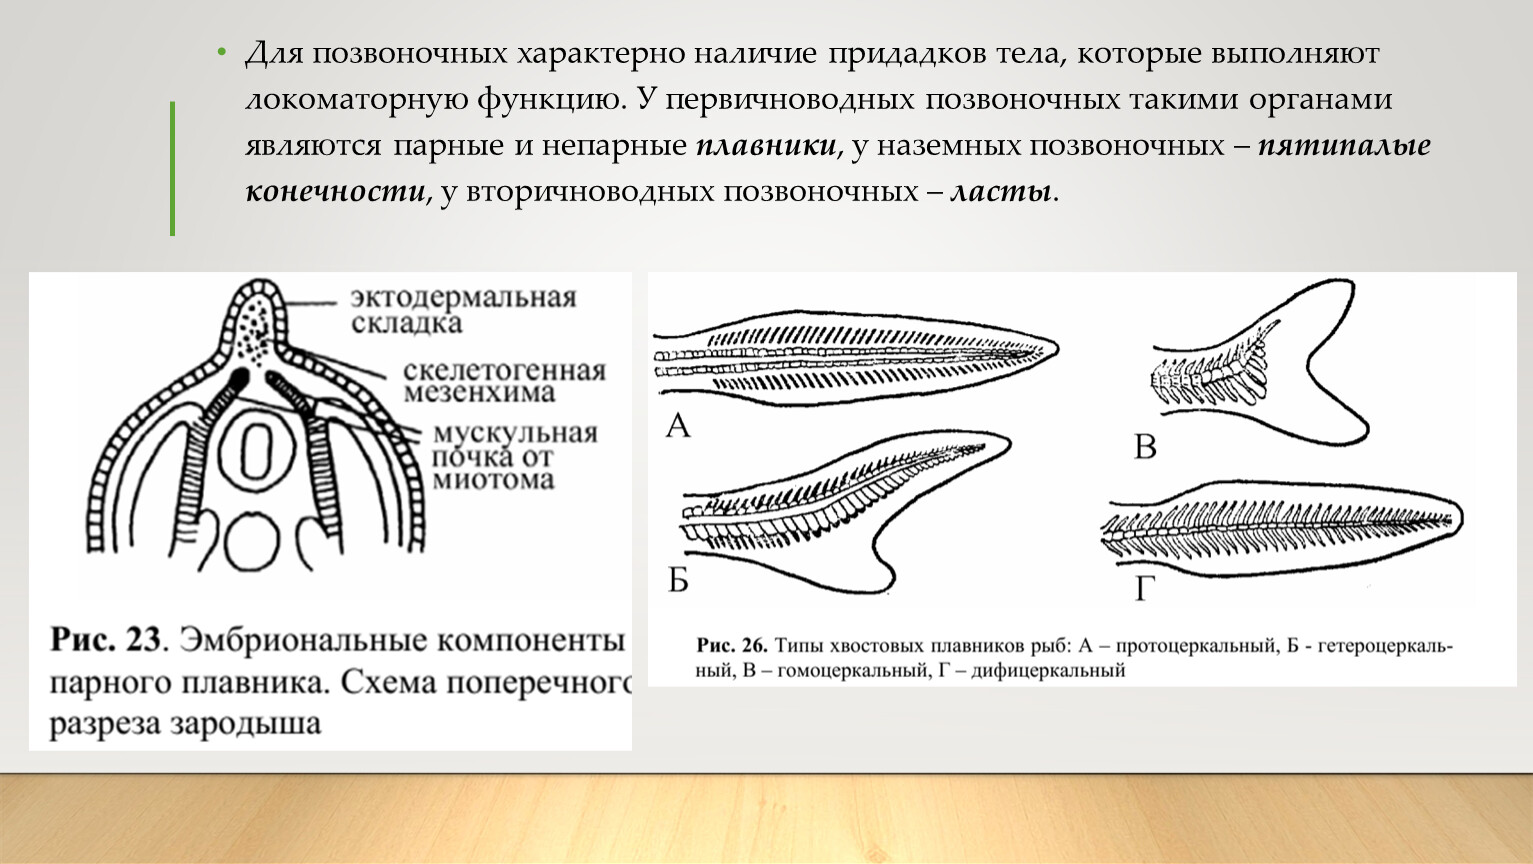 Назовите зародышевый листок позвоночного животного обозначенный на рисунке вопросительным знаком